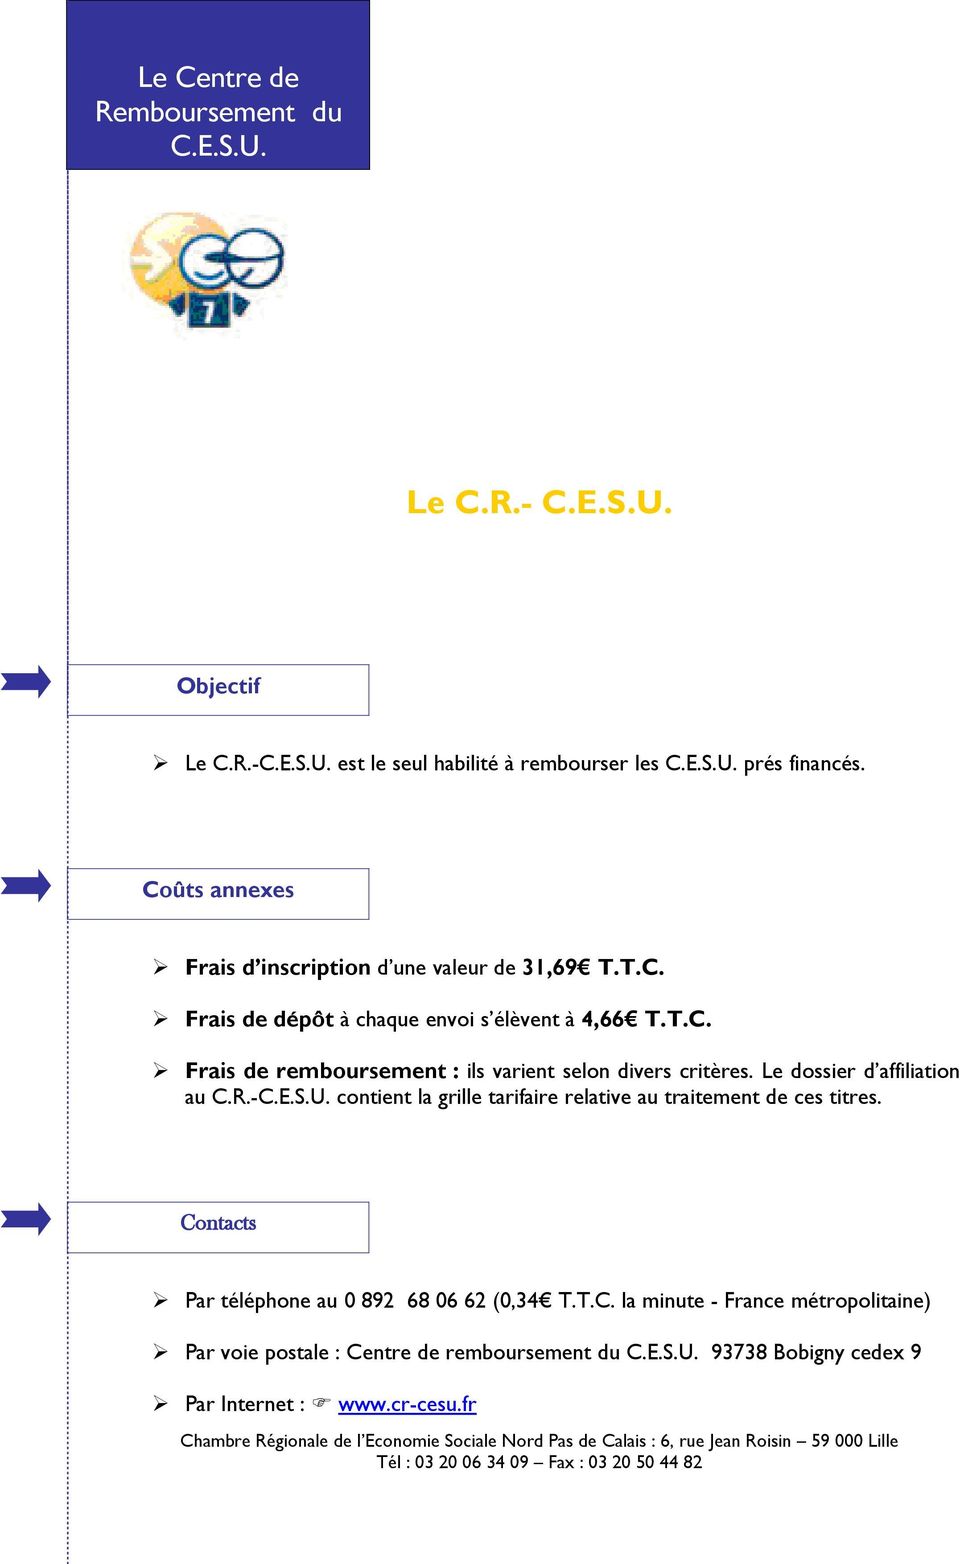 Le dossier d affiliation au C.R.-C.E.S.U. contient la grille tarifaire relative au traitement de ces titres.